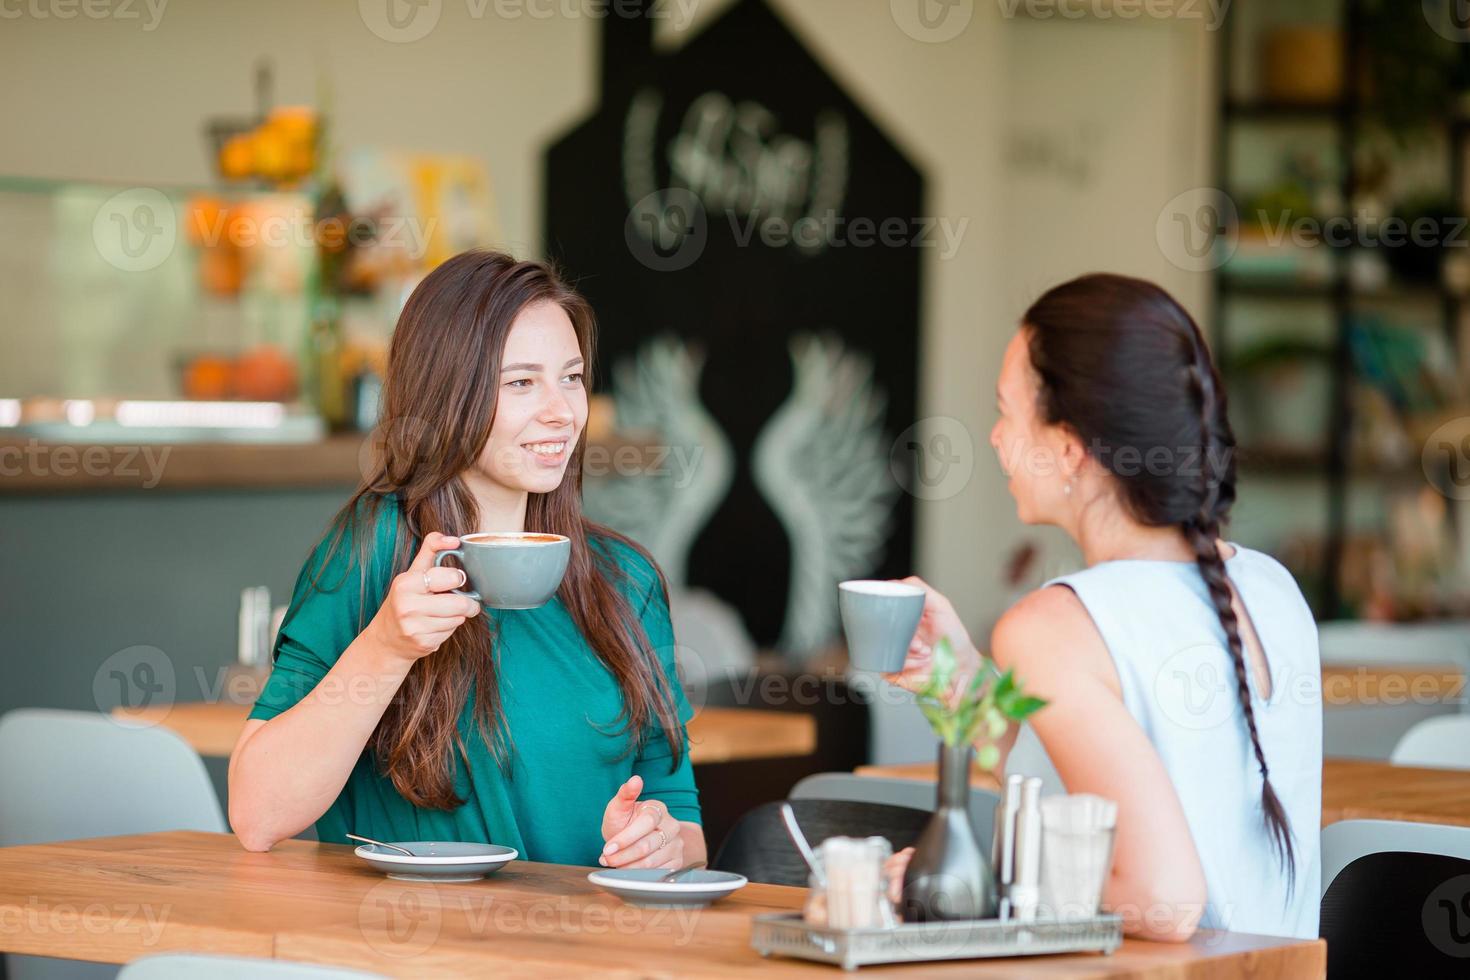 mulheres jovens sorridentes felizes com xícaras de café no café. conceito de comunicação e amizade foto